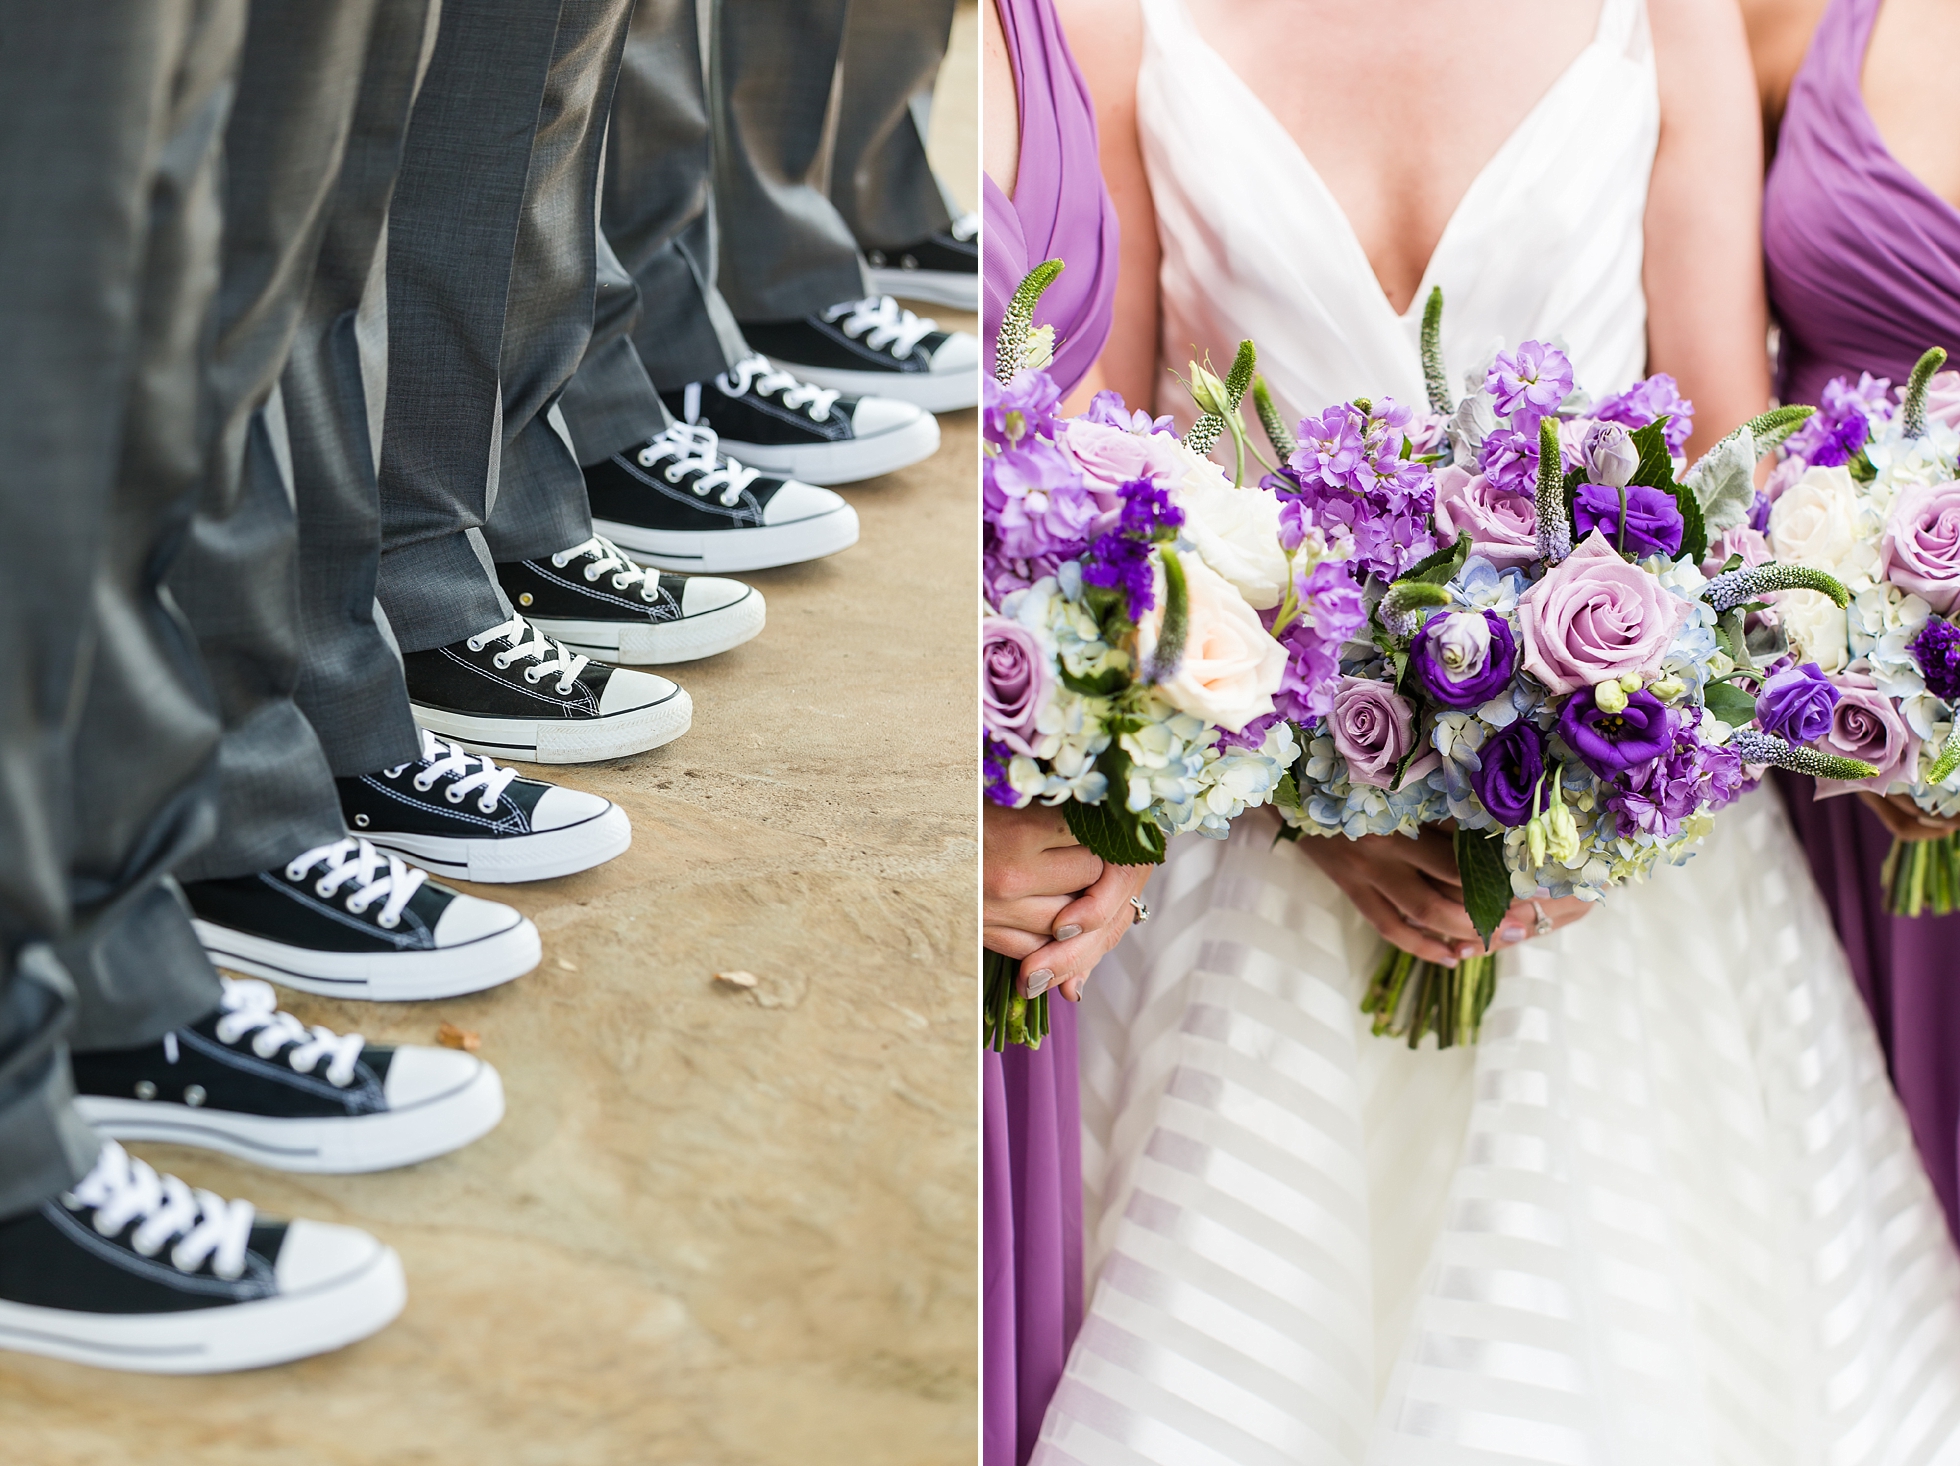 converse sneakers groomsmen wedding details